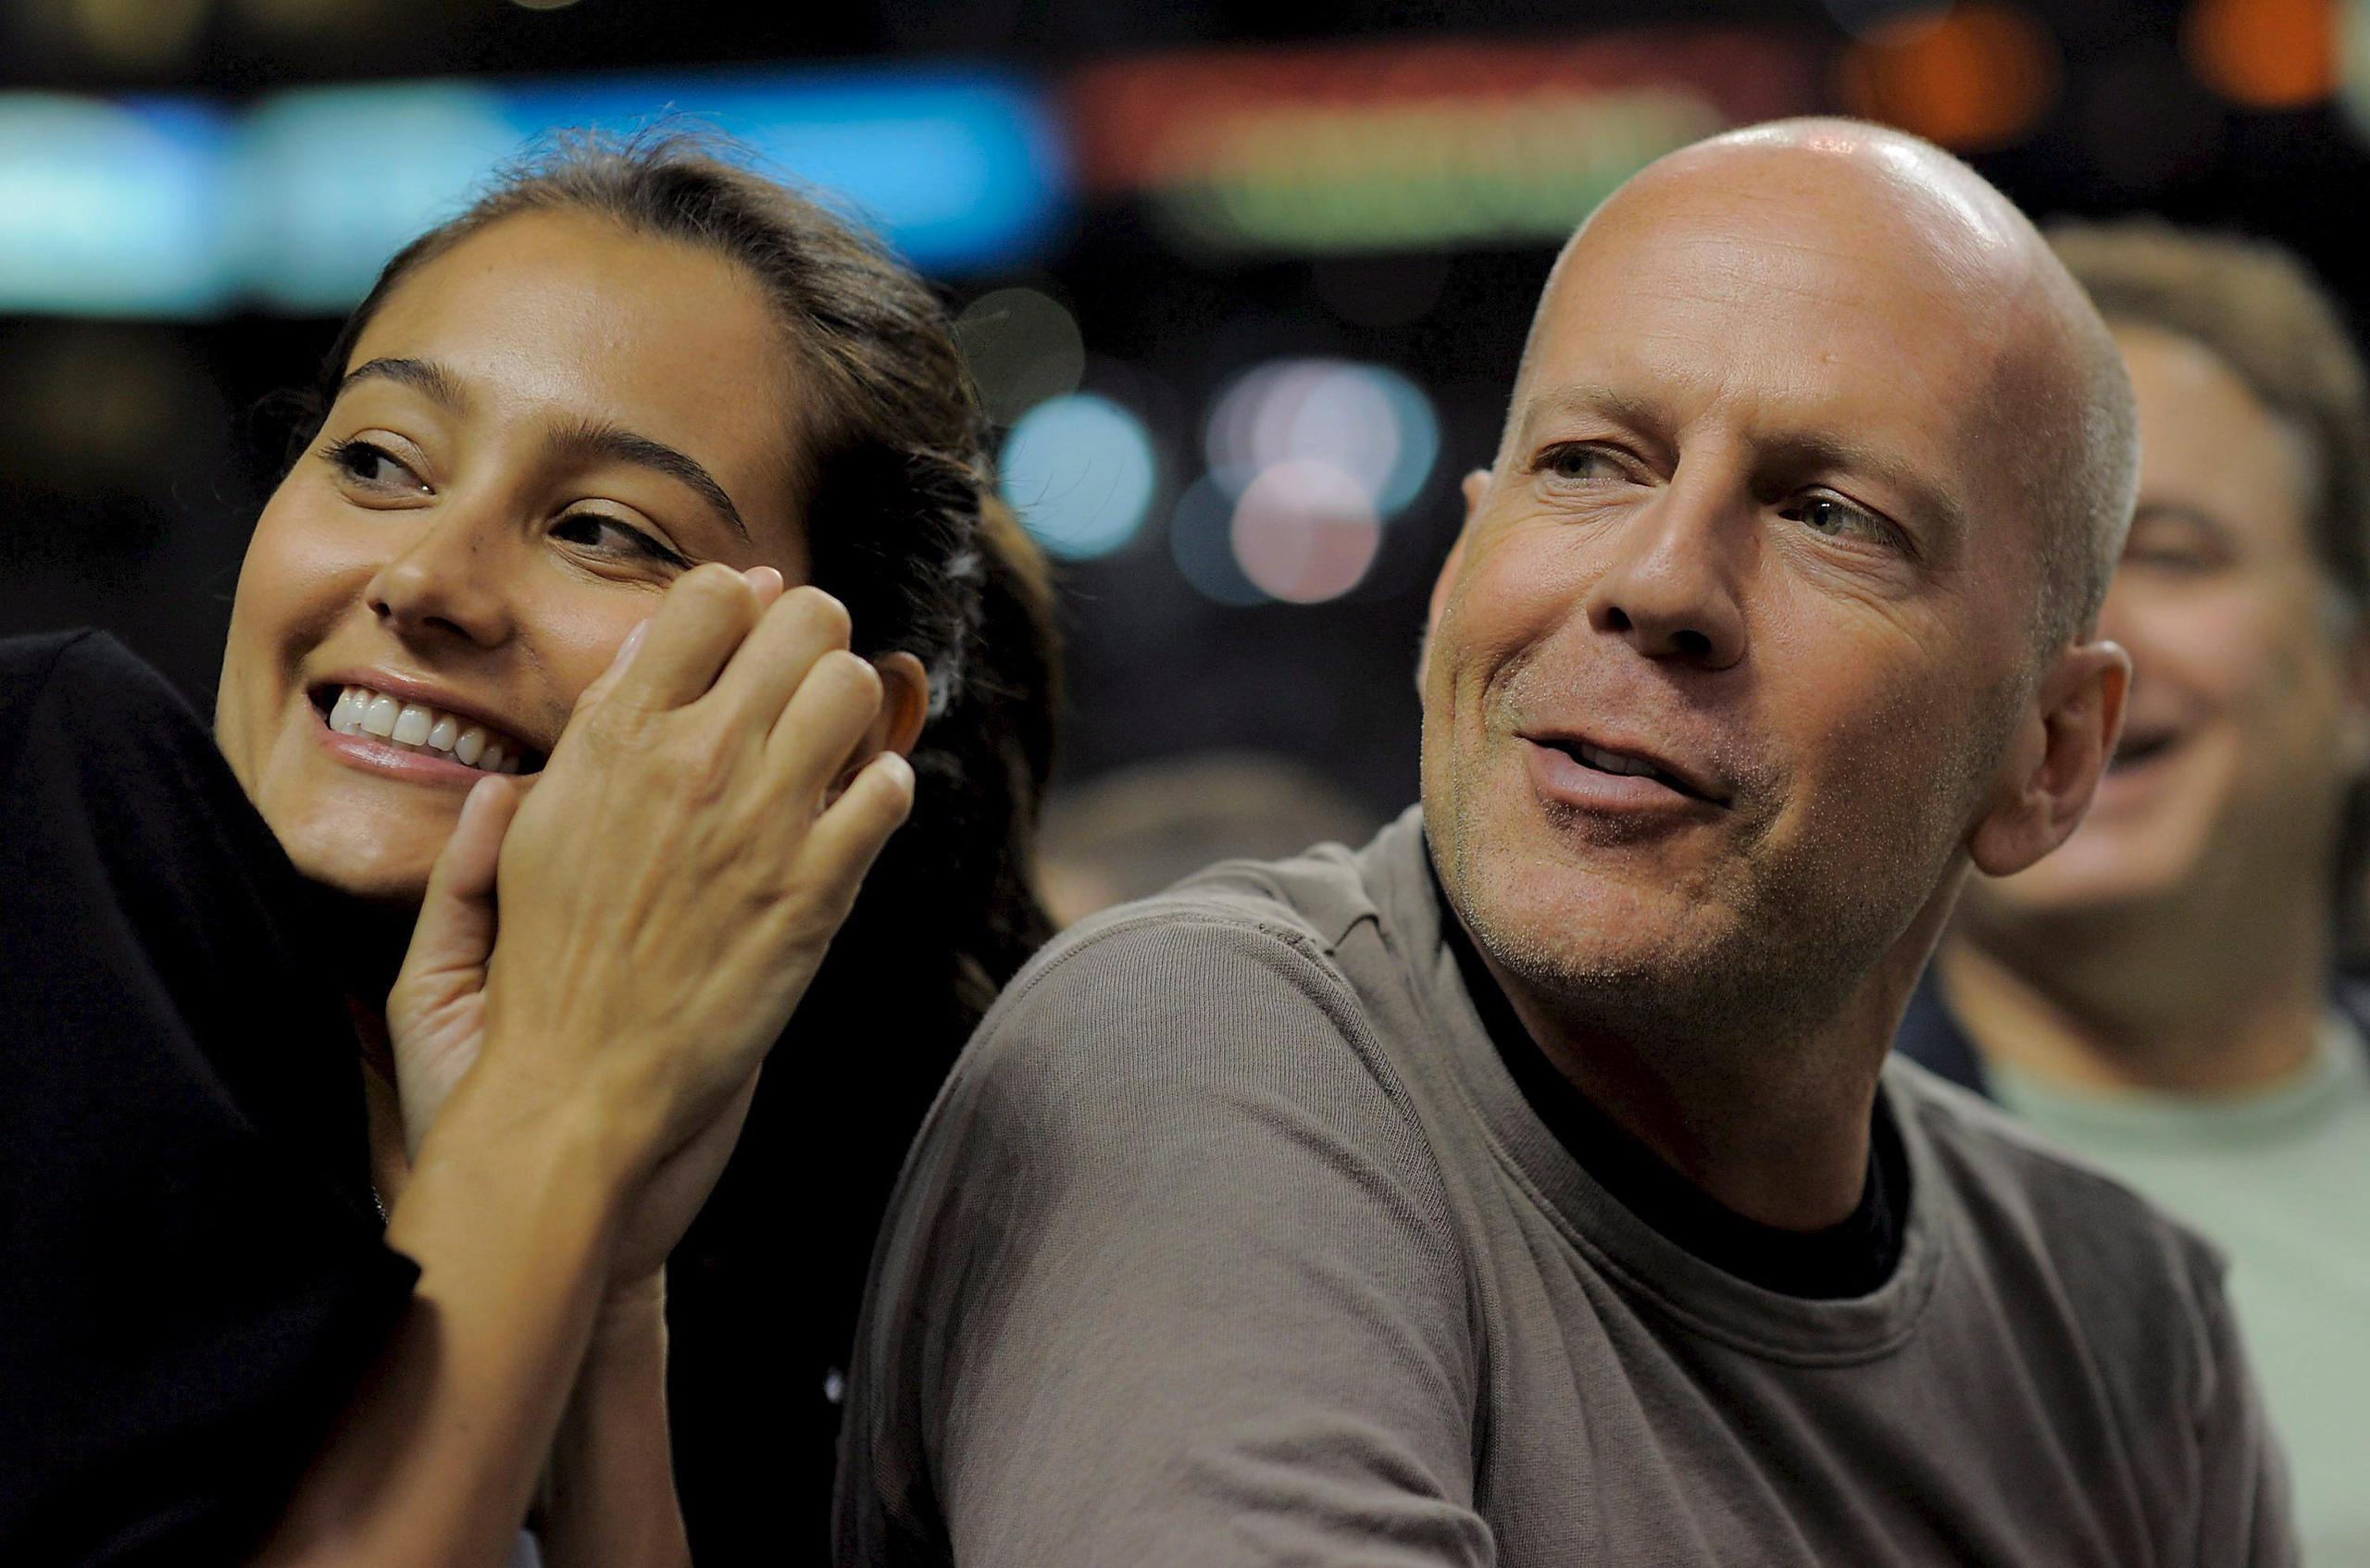 Los actores Bruce Willis (derecha) y Emma Heming (izquierda) asisten a un partido de la NBA entre los Celtics de Boston y los Hawks de Atlanta en abril de 2008.